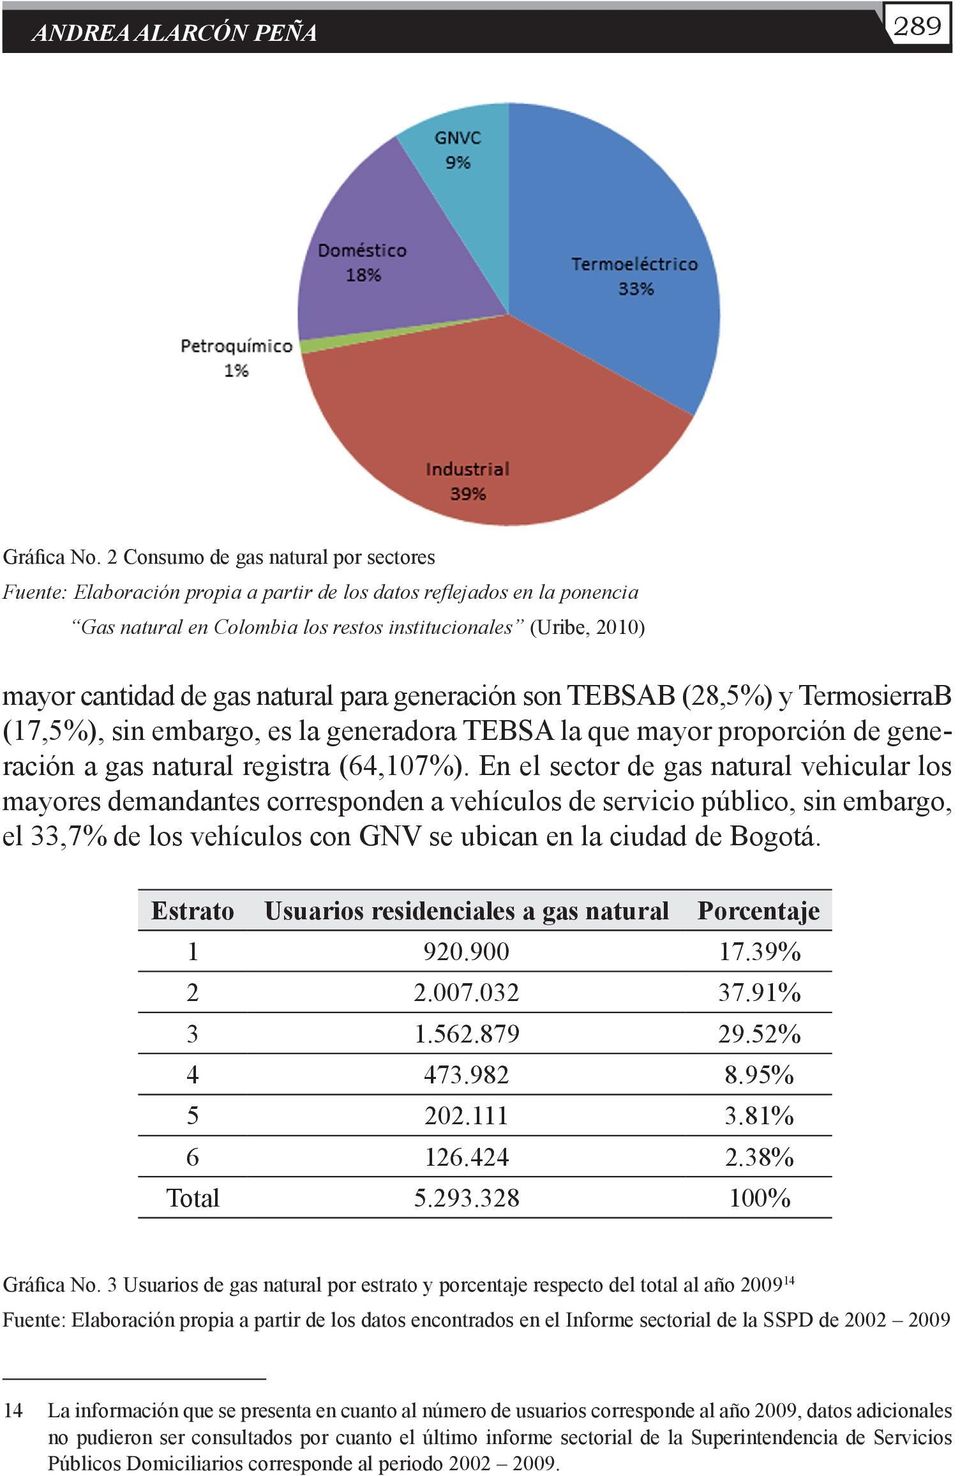 natural para generación son TEBSAB (28,5%) y TermosierraB (17,5%), sin embargo, es la generadora TEBSA la que mayor proporción de generación a gas natural registra (64,107%).